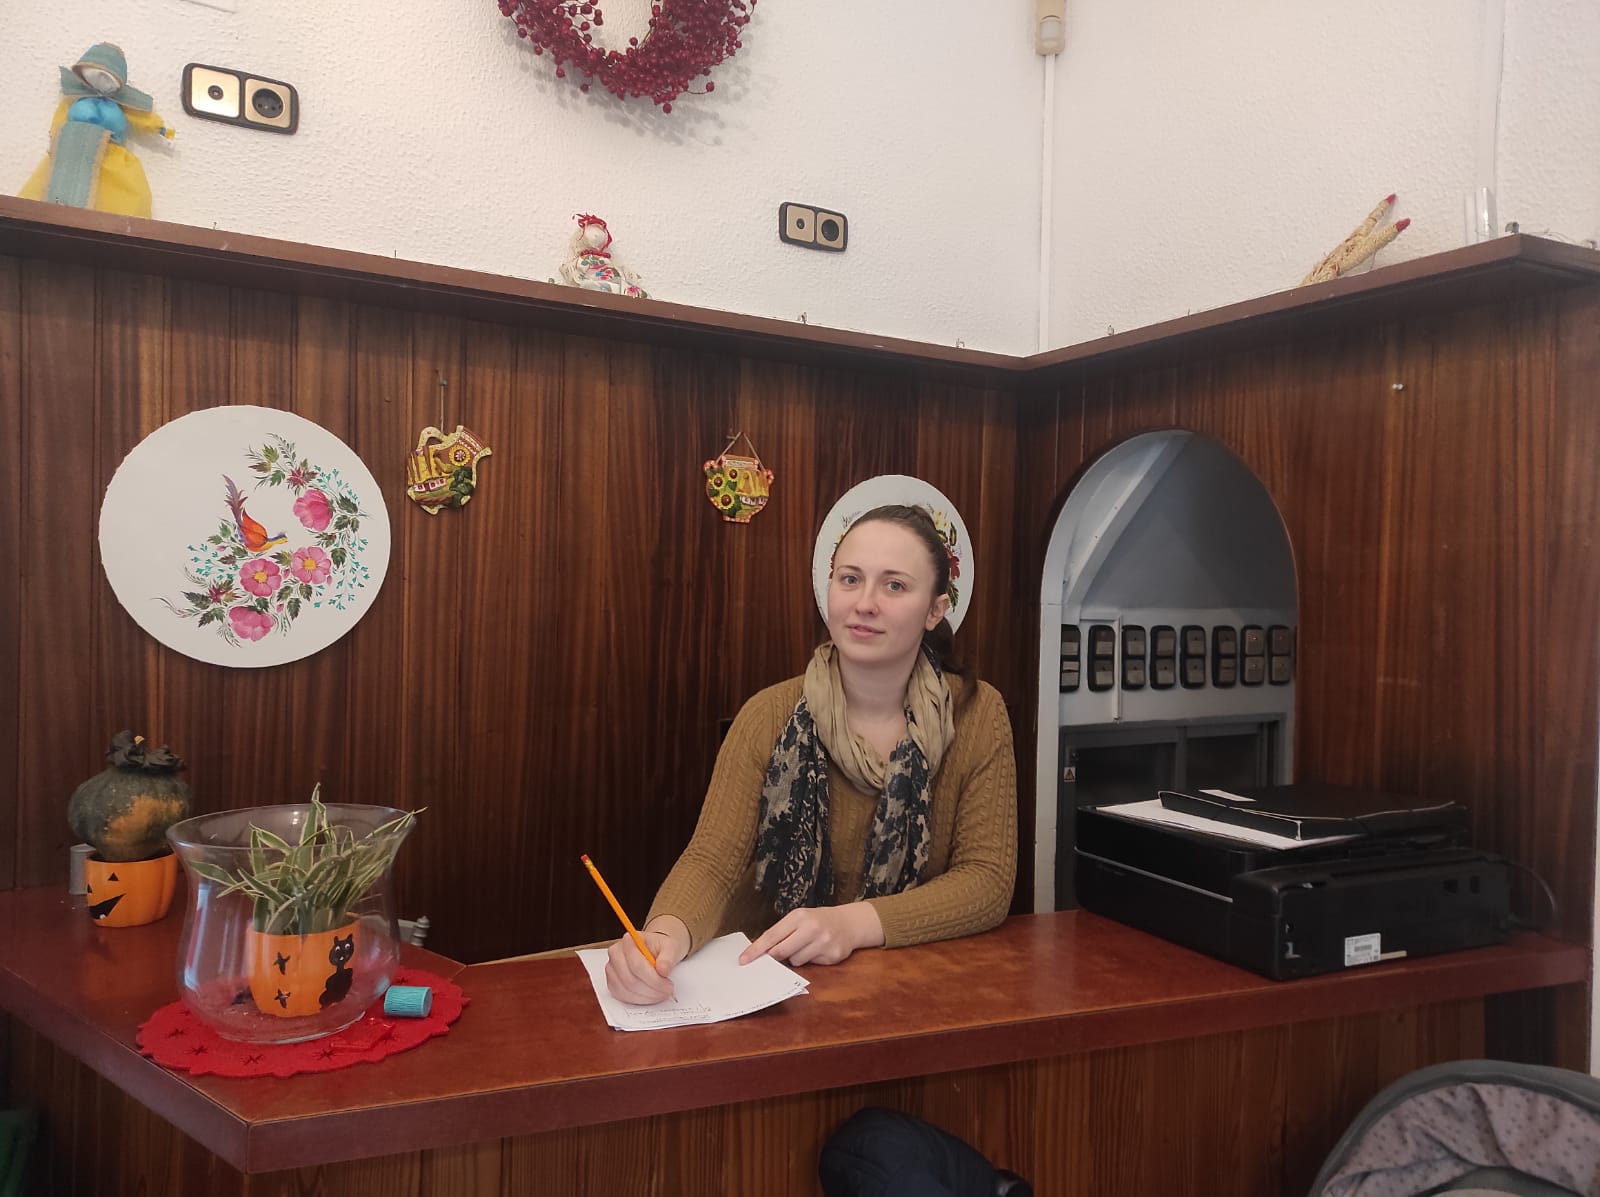 La presidenta de Amar Ucrania, Anastasia Kvach, en el recibidor del Hostal Sorrento